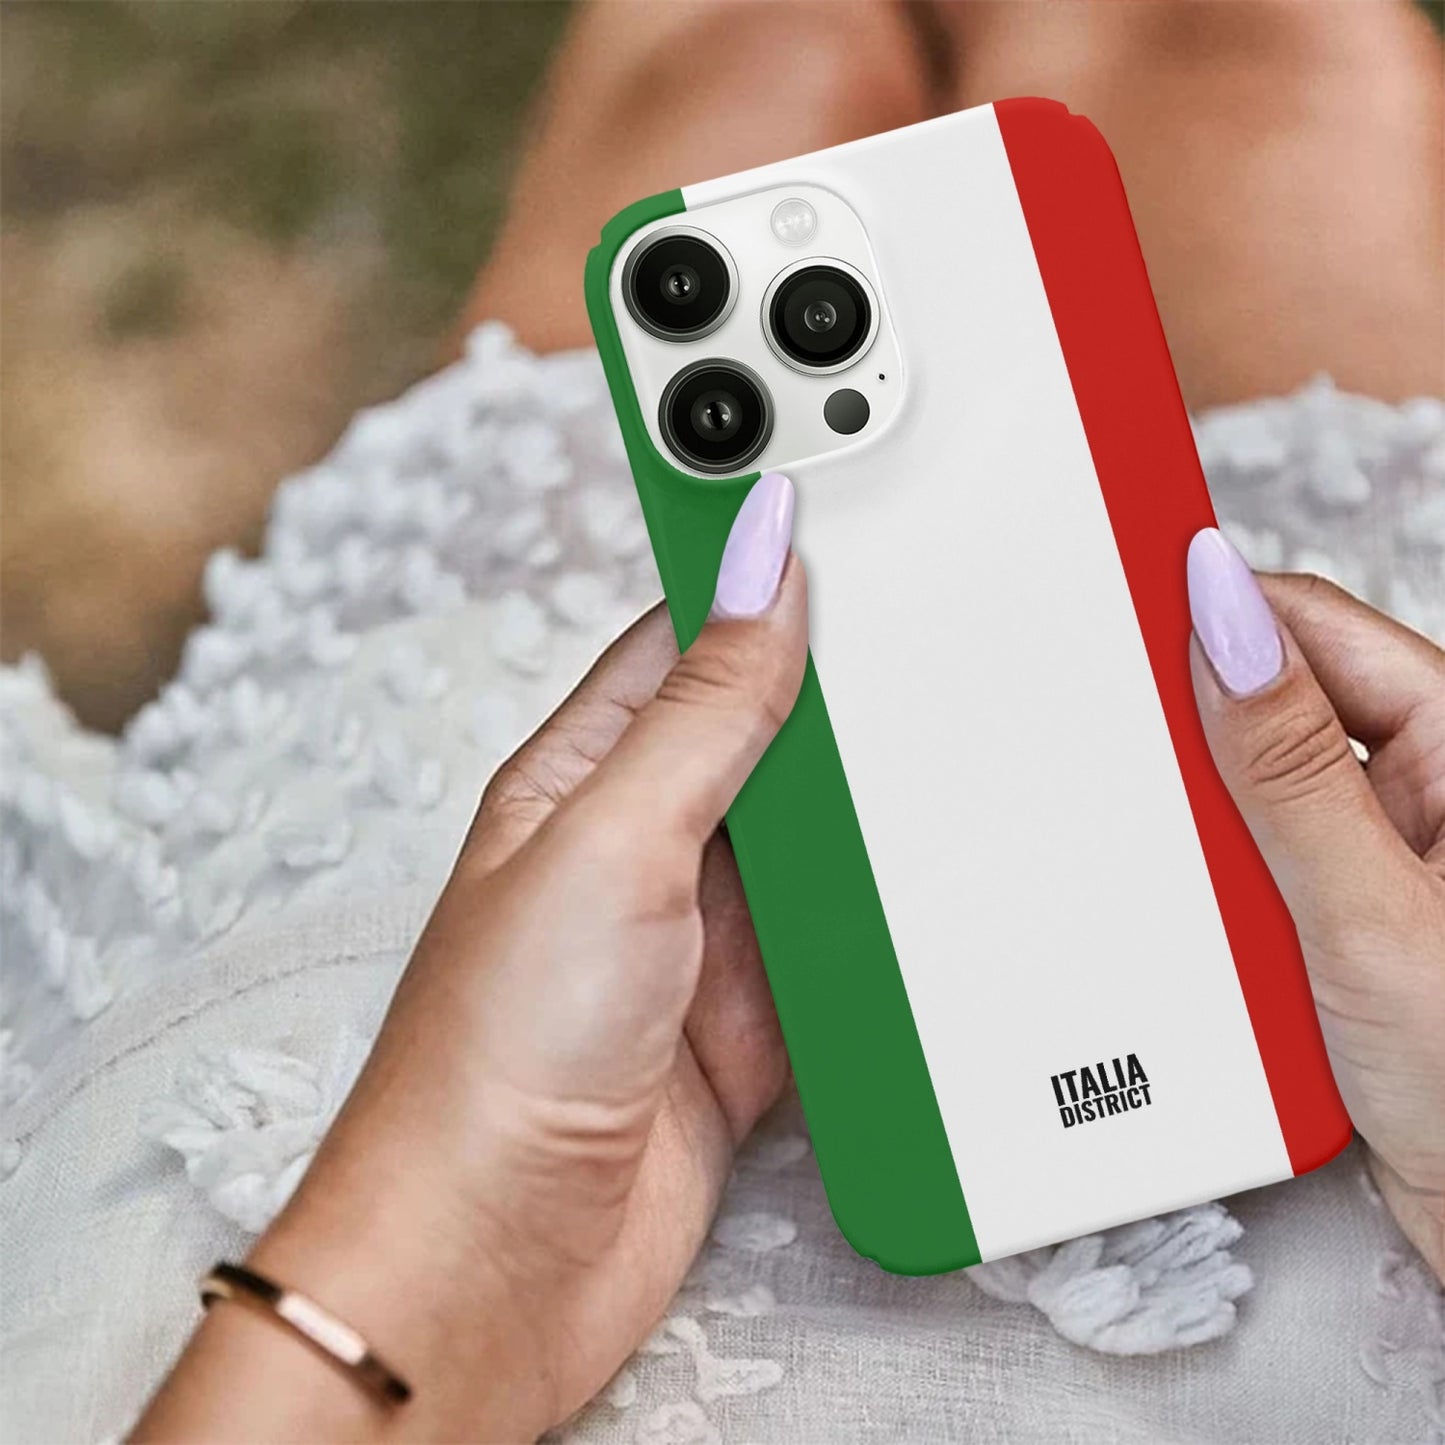 Italian Flag - iPhone 13 Pro Max Case